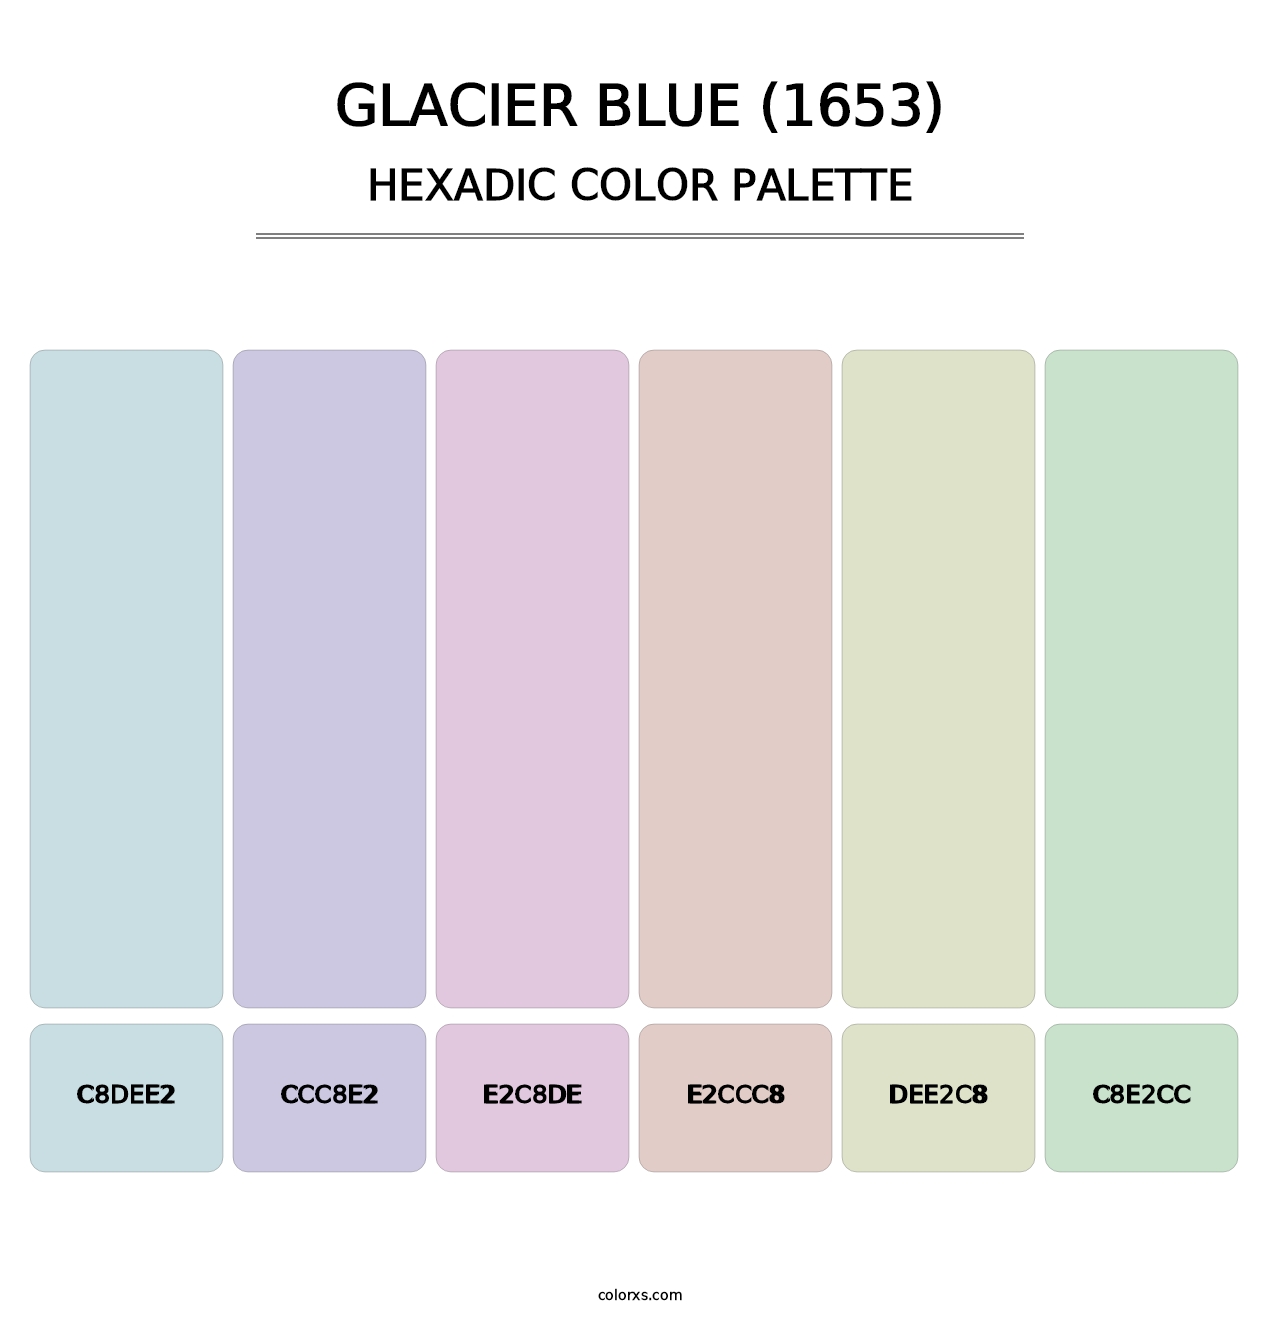 Glacier Blue (1653) - Hexadic Color Palette